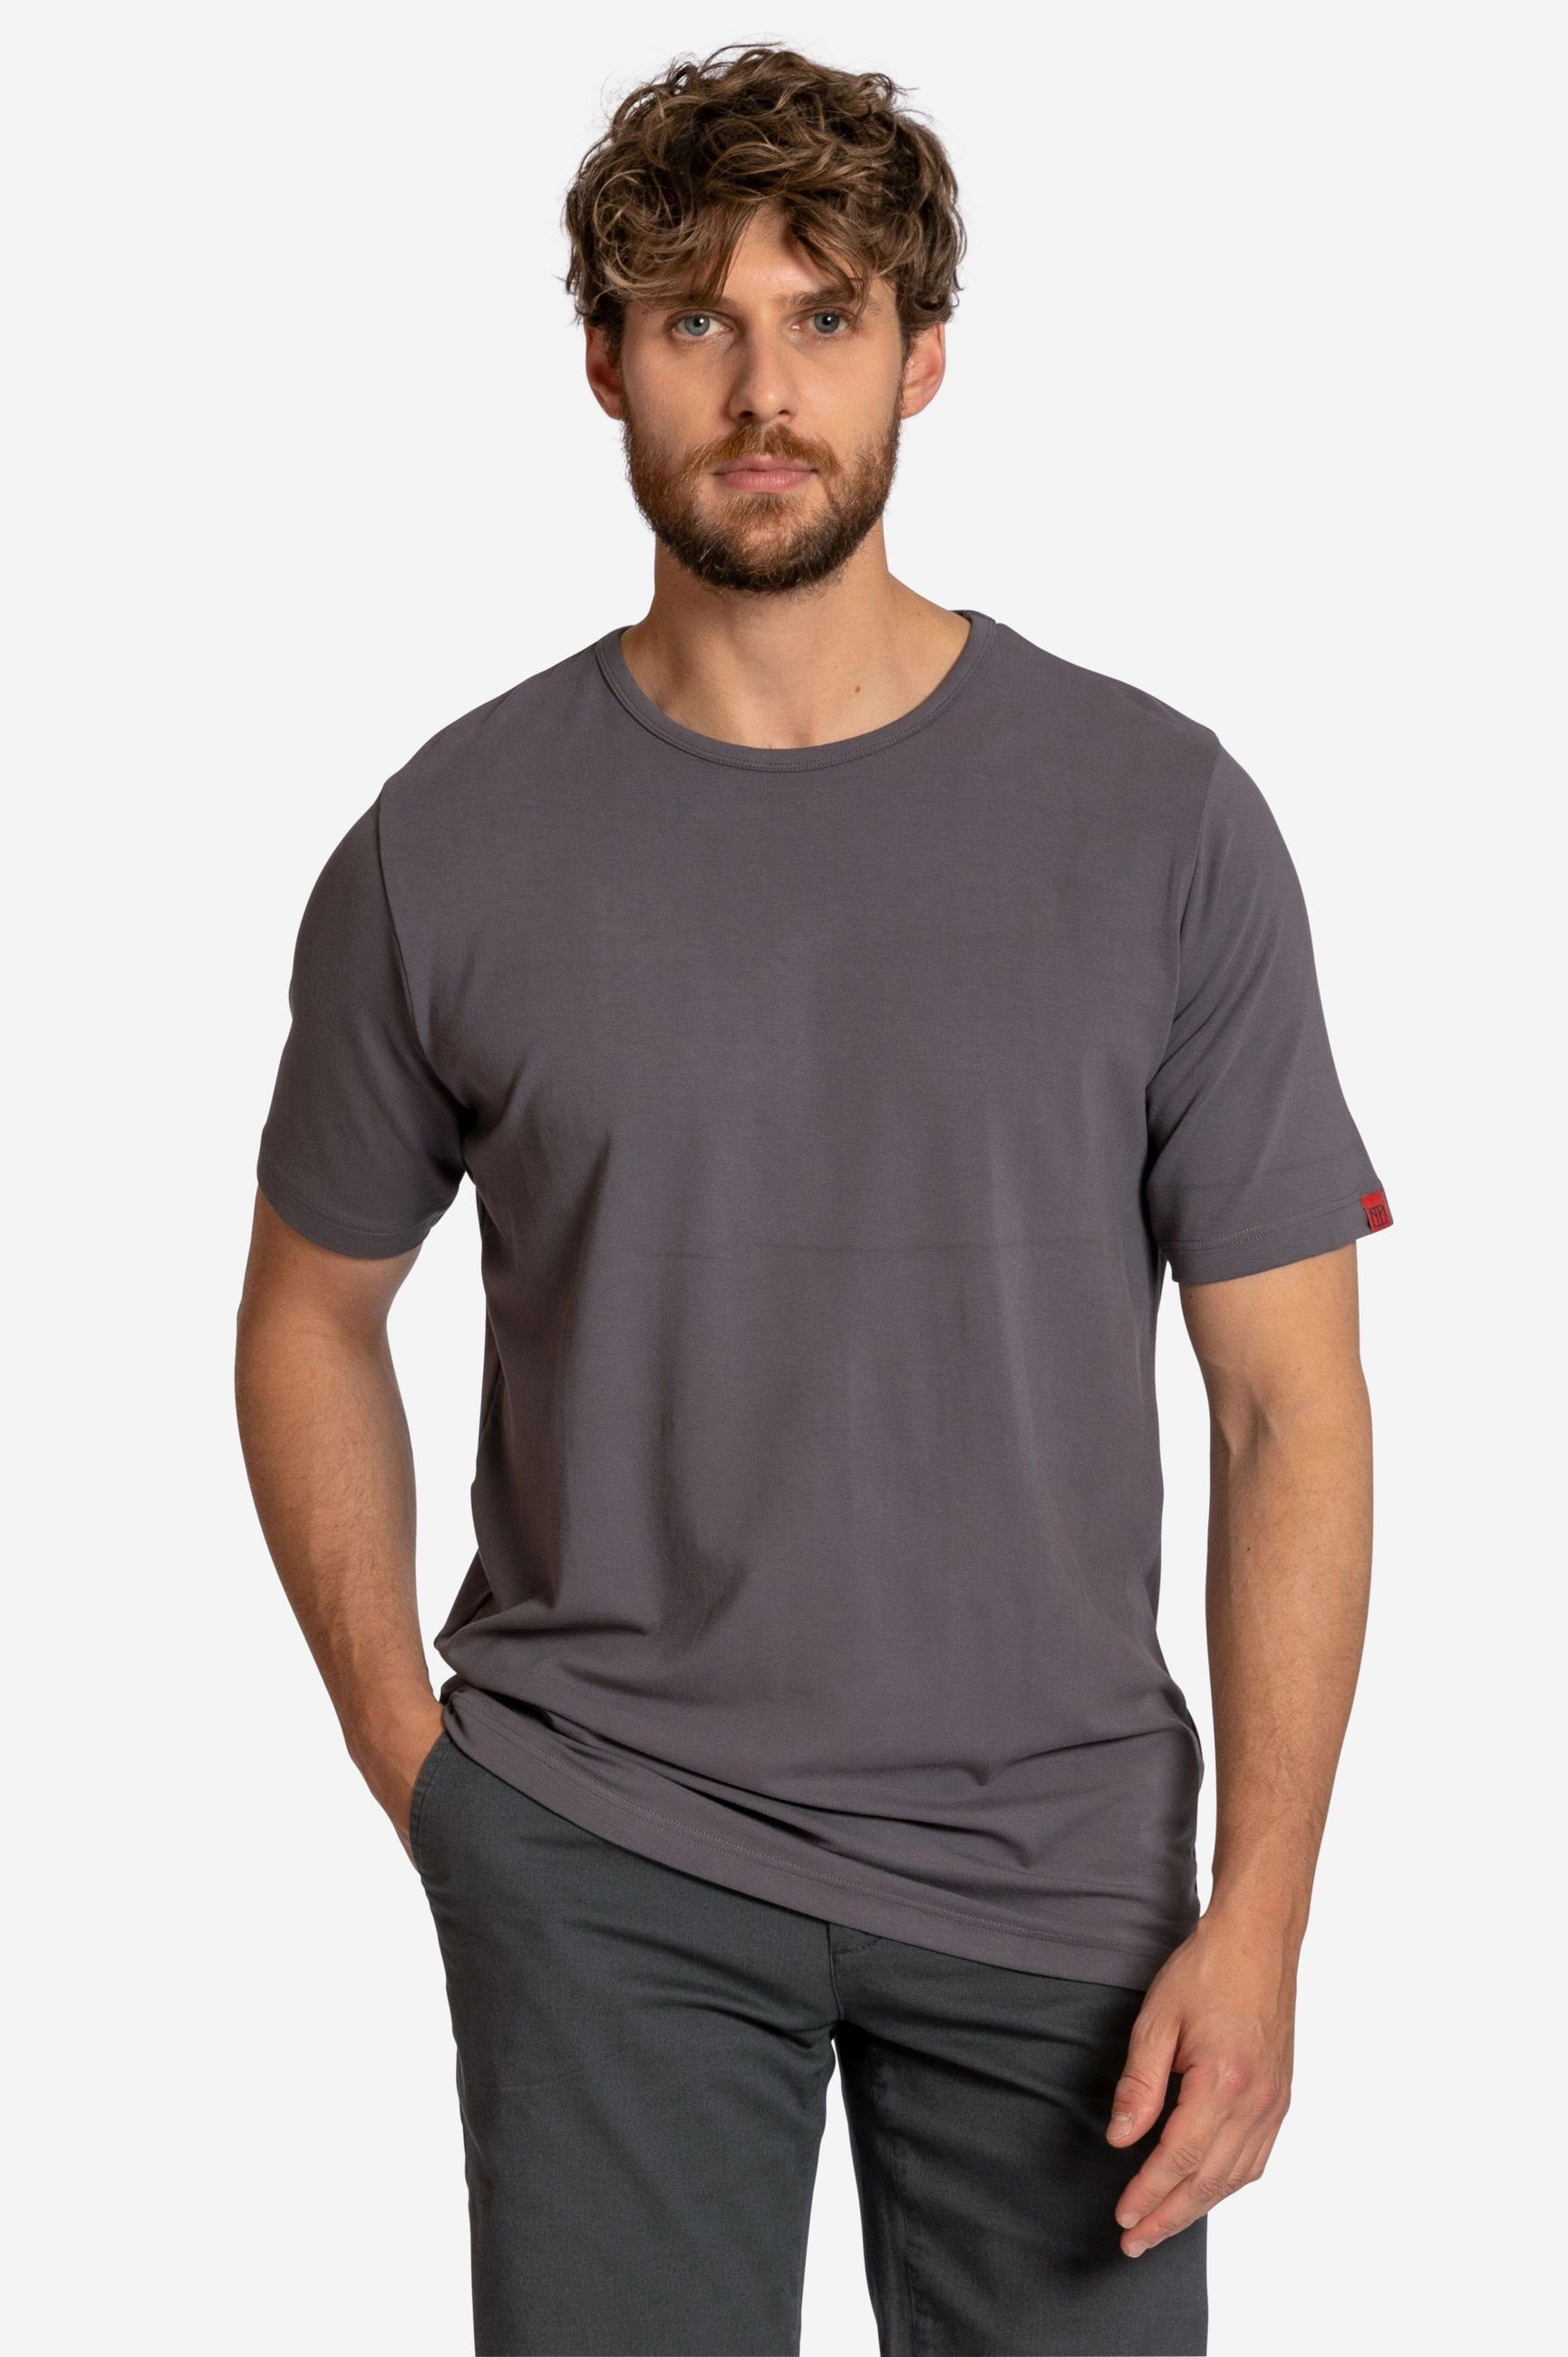 Elkline T-Shirt Schnitt sportlich gerader Unifarben grey Drive Basic Cool